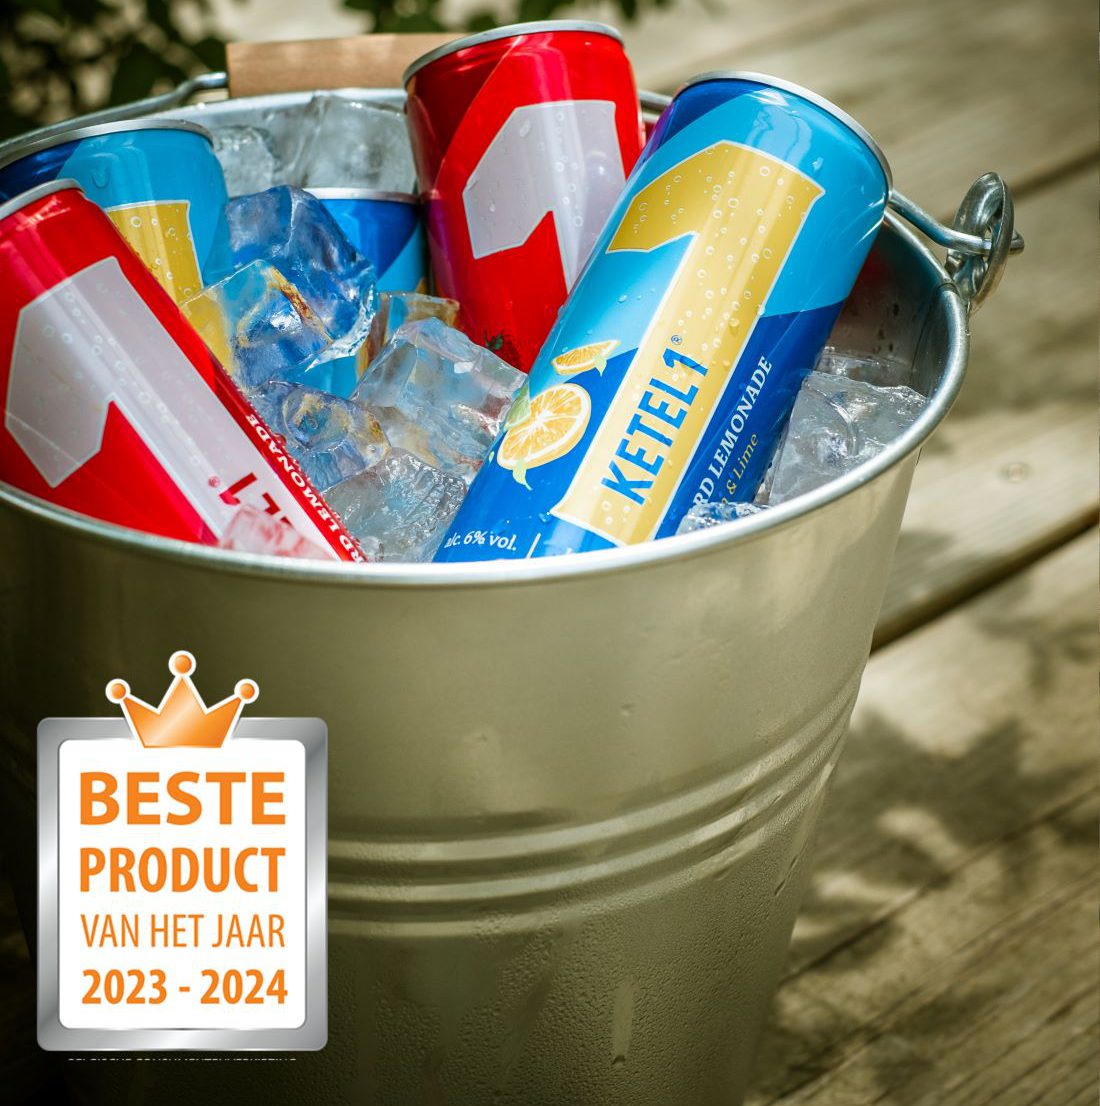 KETEL 1 Hard Lemonade verkozen tot Product van het Jaar 2023-2024